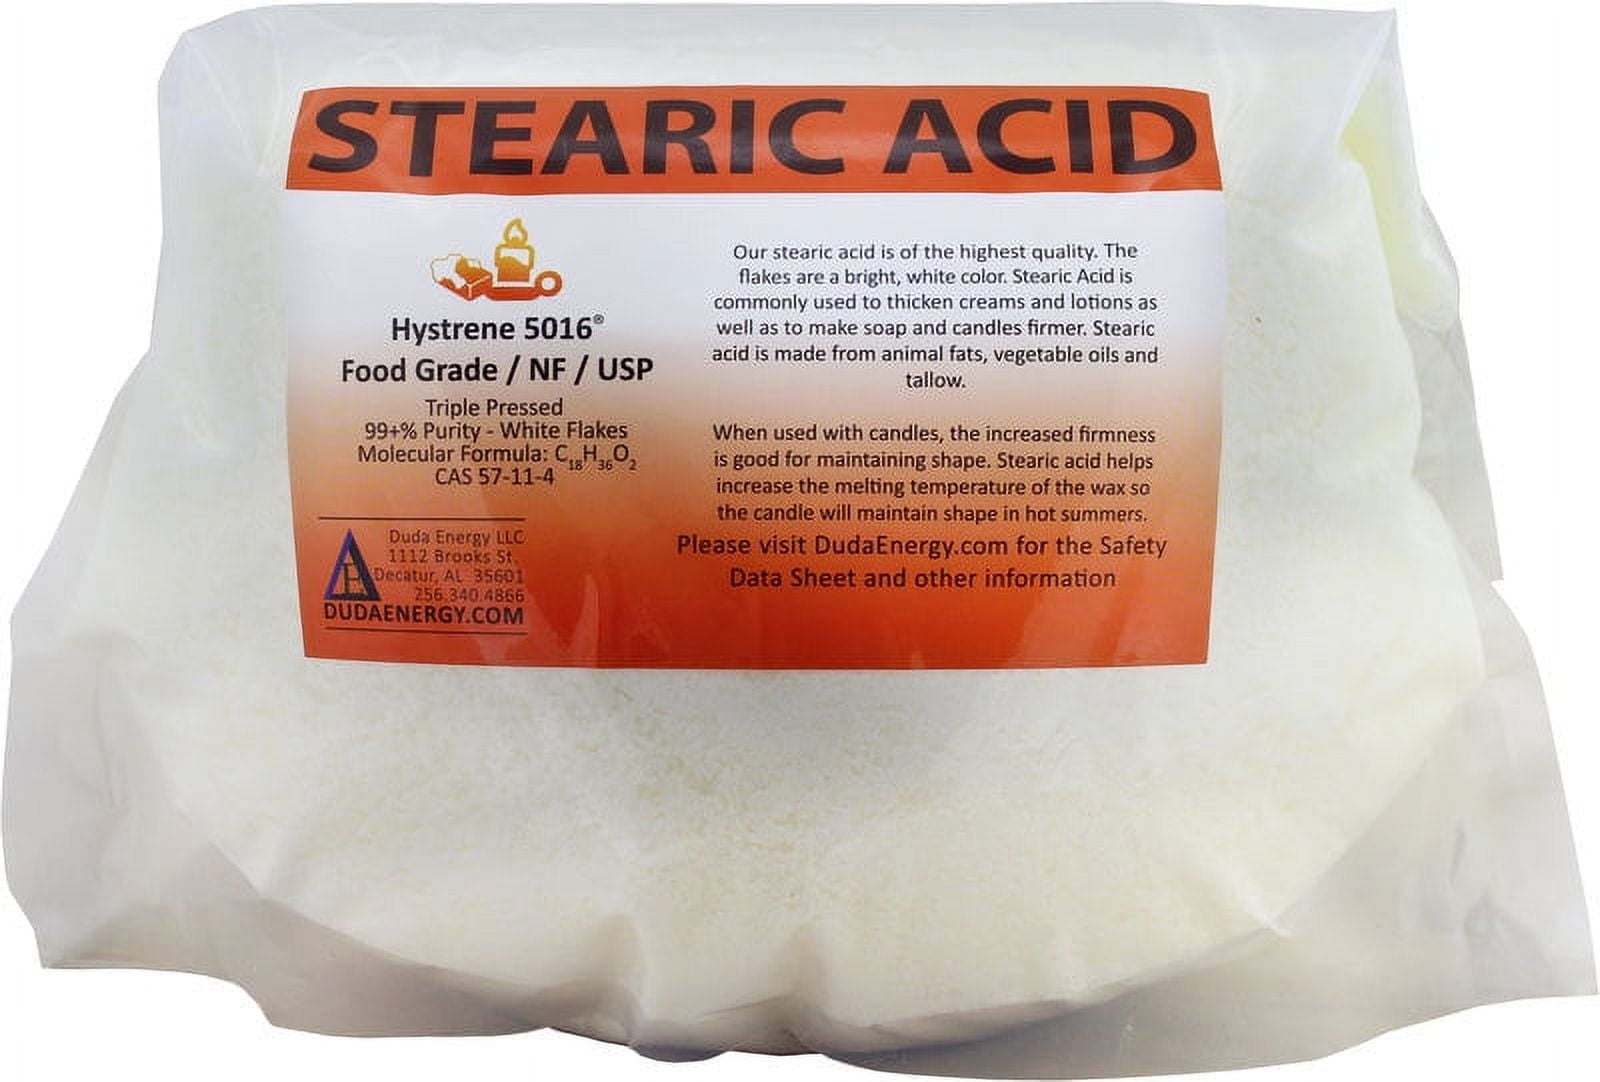 Buy Online 100% Vegetable Based Stearic Acid - MakeYourOwn